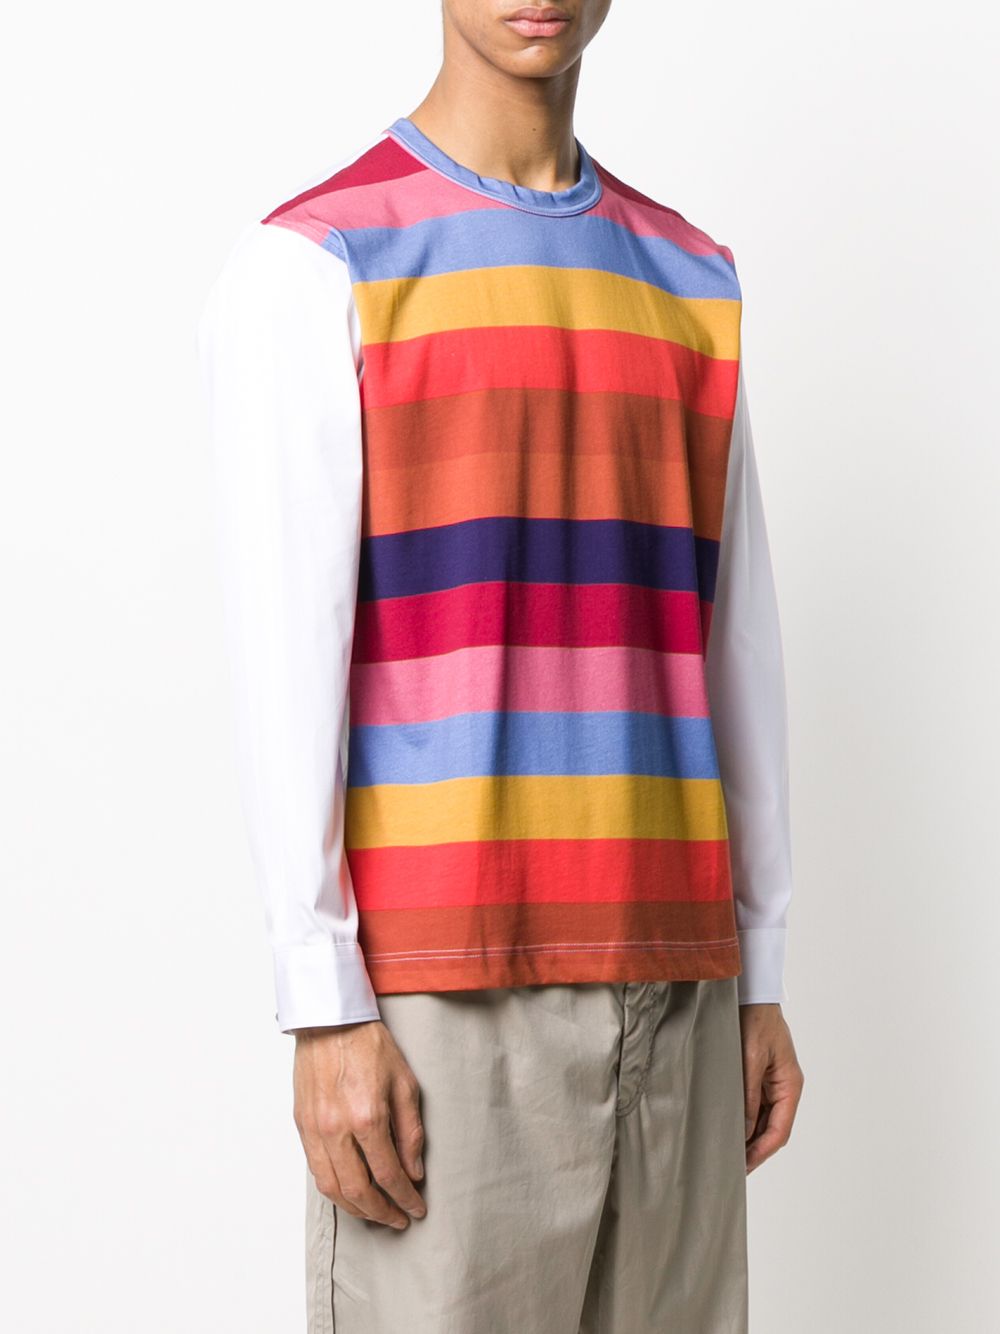 фото Comme des garçons shirt футболка в разноцветную полоску